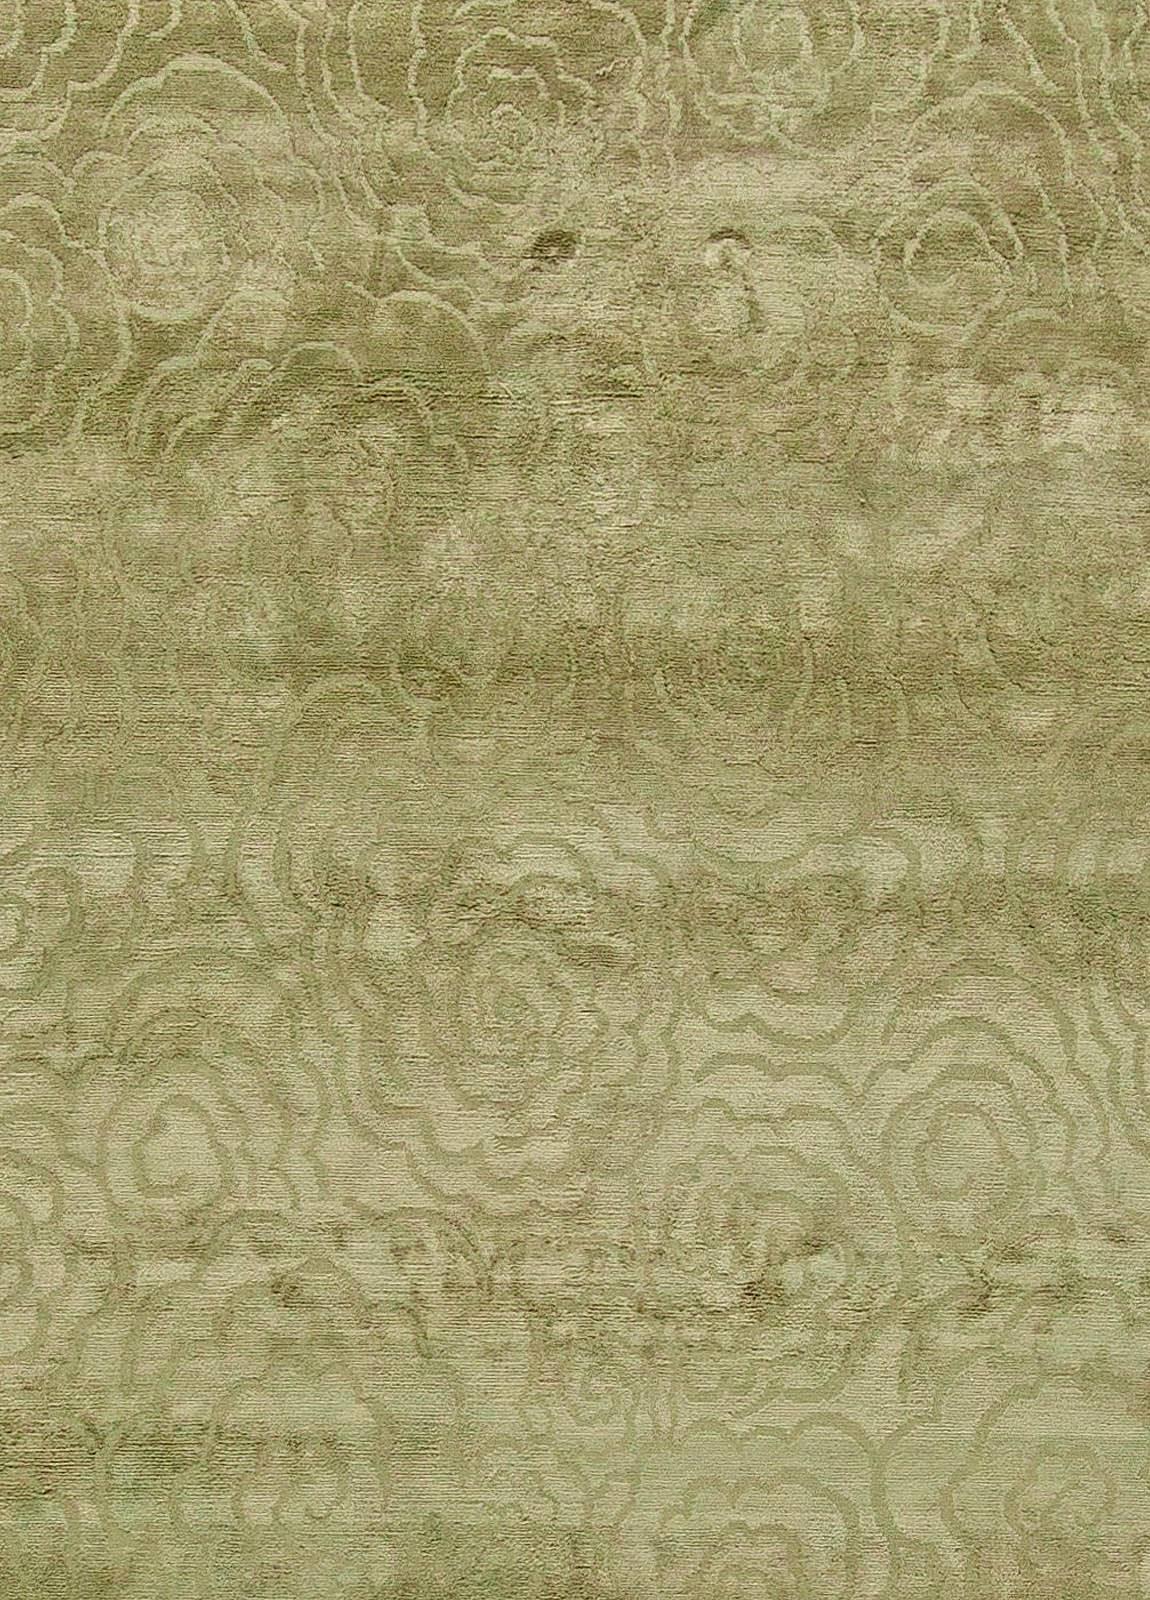 Contemporary Camelia green handmade silk rug by Doris Leslie Blau.
Size: 12'4